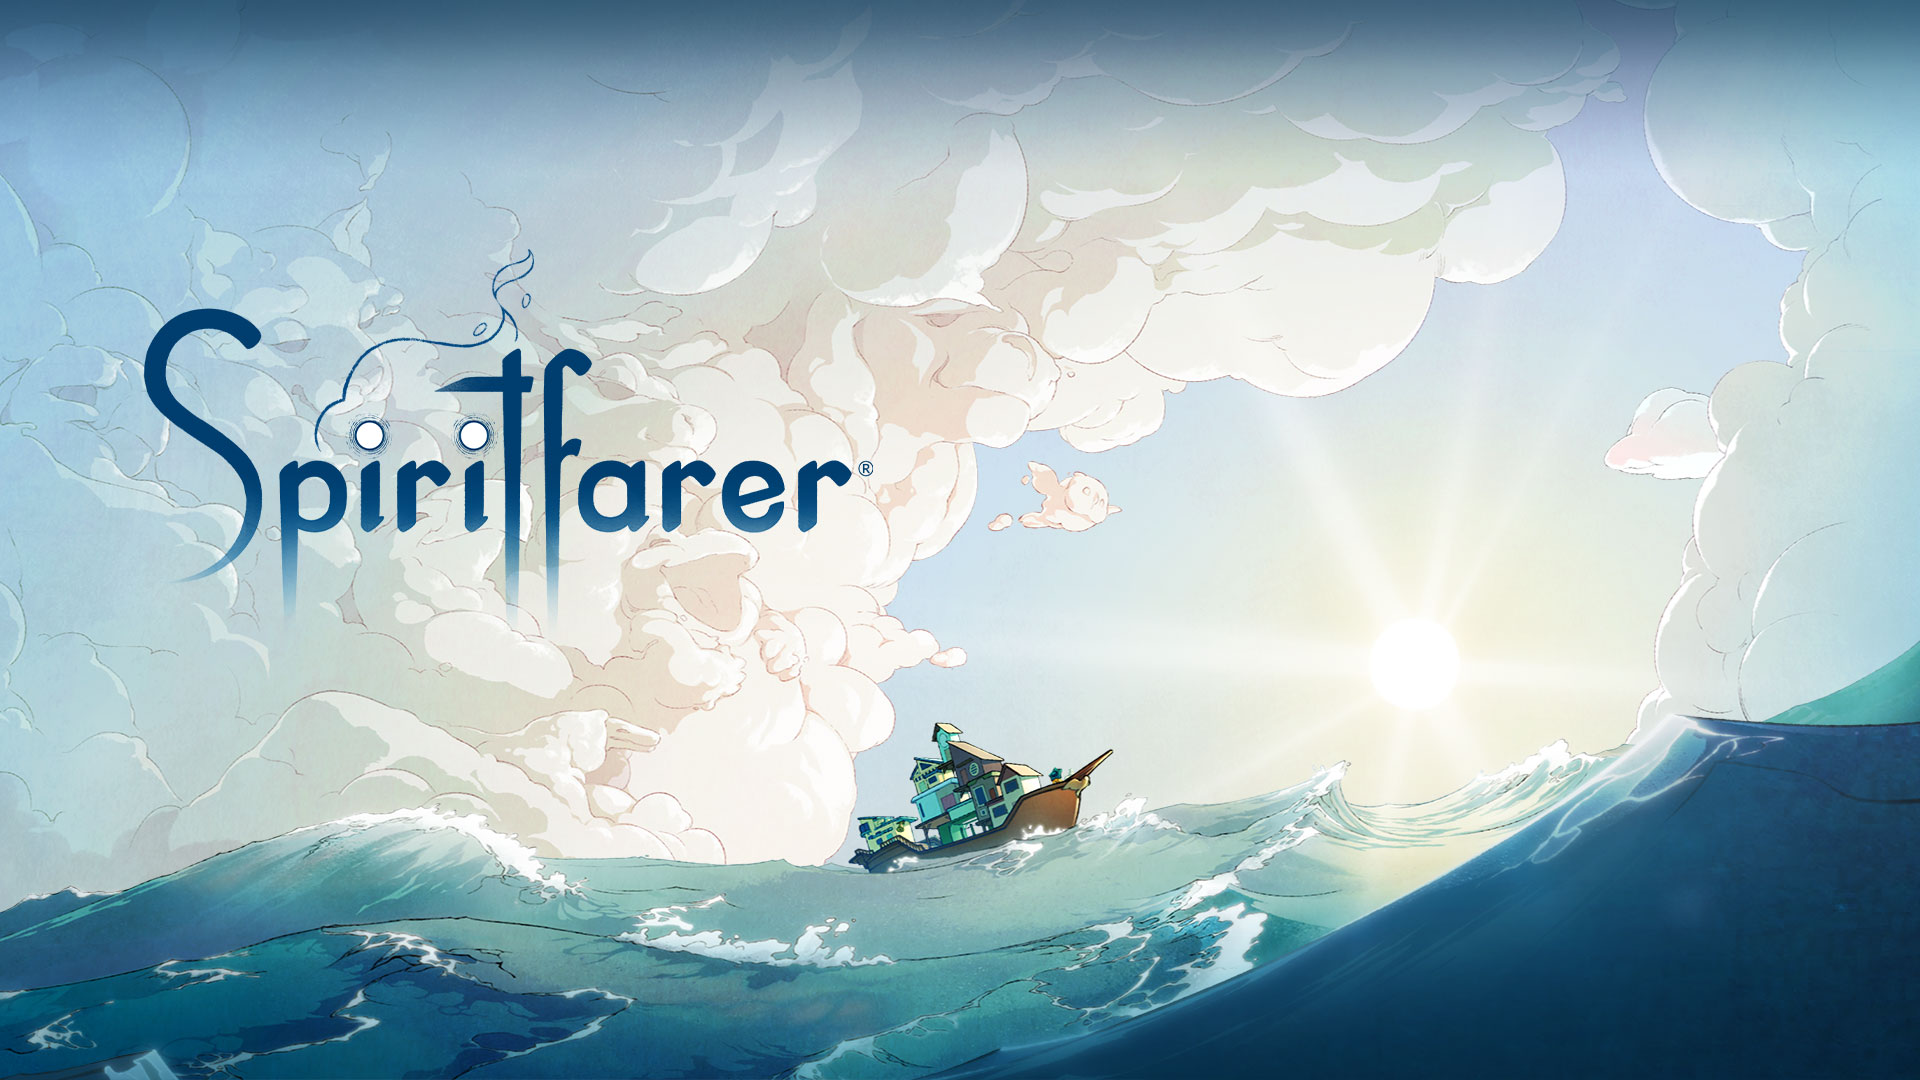 Logo Spiritfarer, bateau sur l’eau avec des nuages formant différents animaux